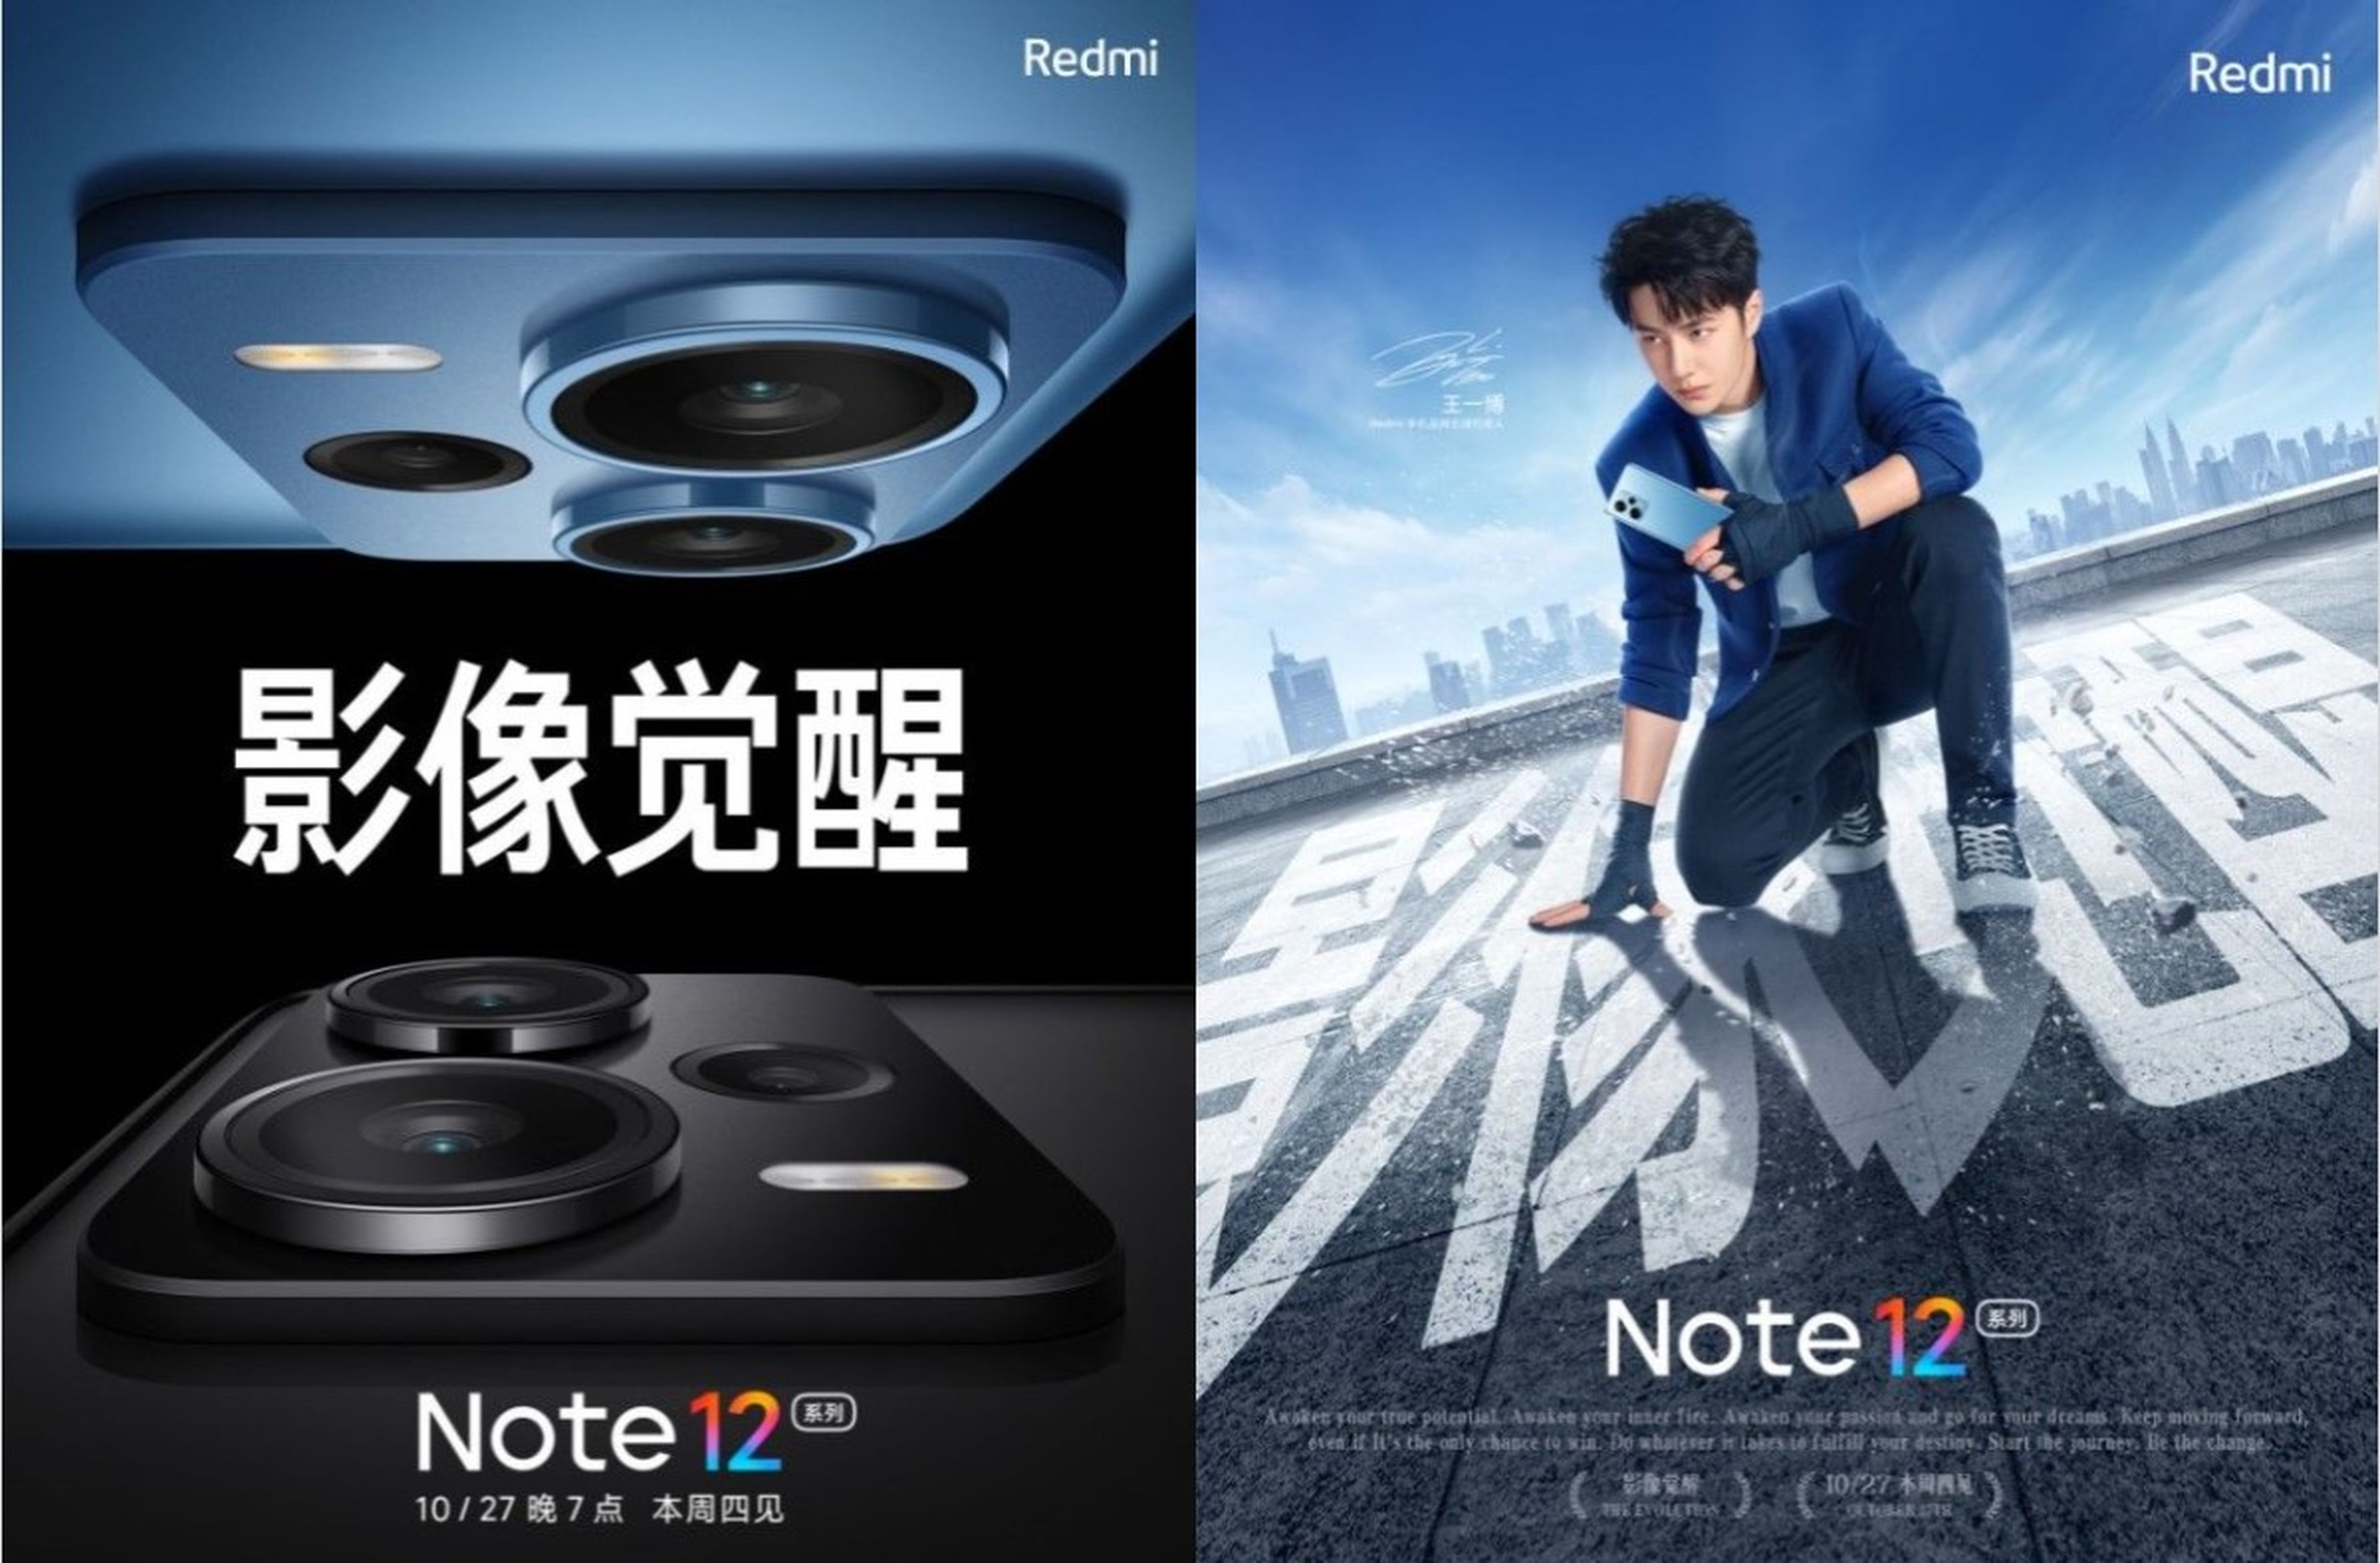 Serie Redmi Note 12: fecha de lanzamiento y algunas de sus especificaciones desveladas